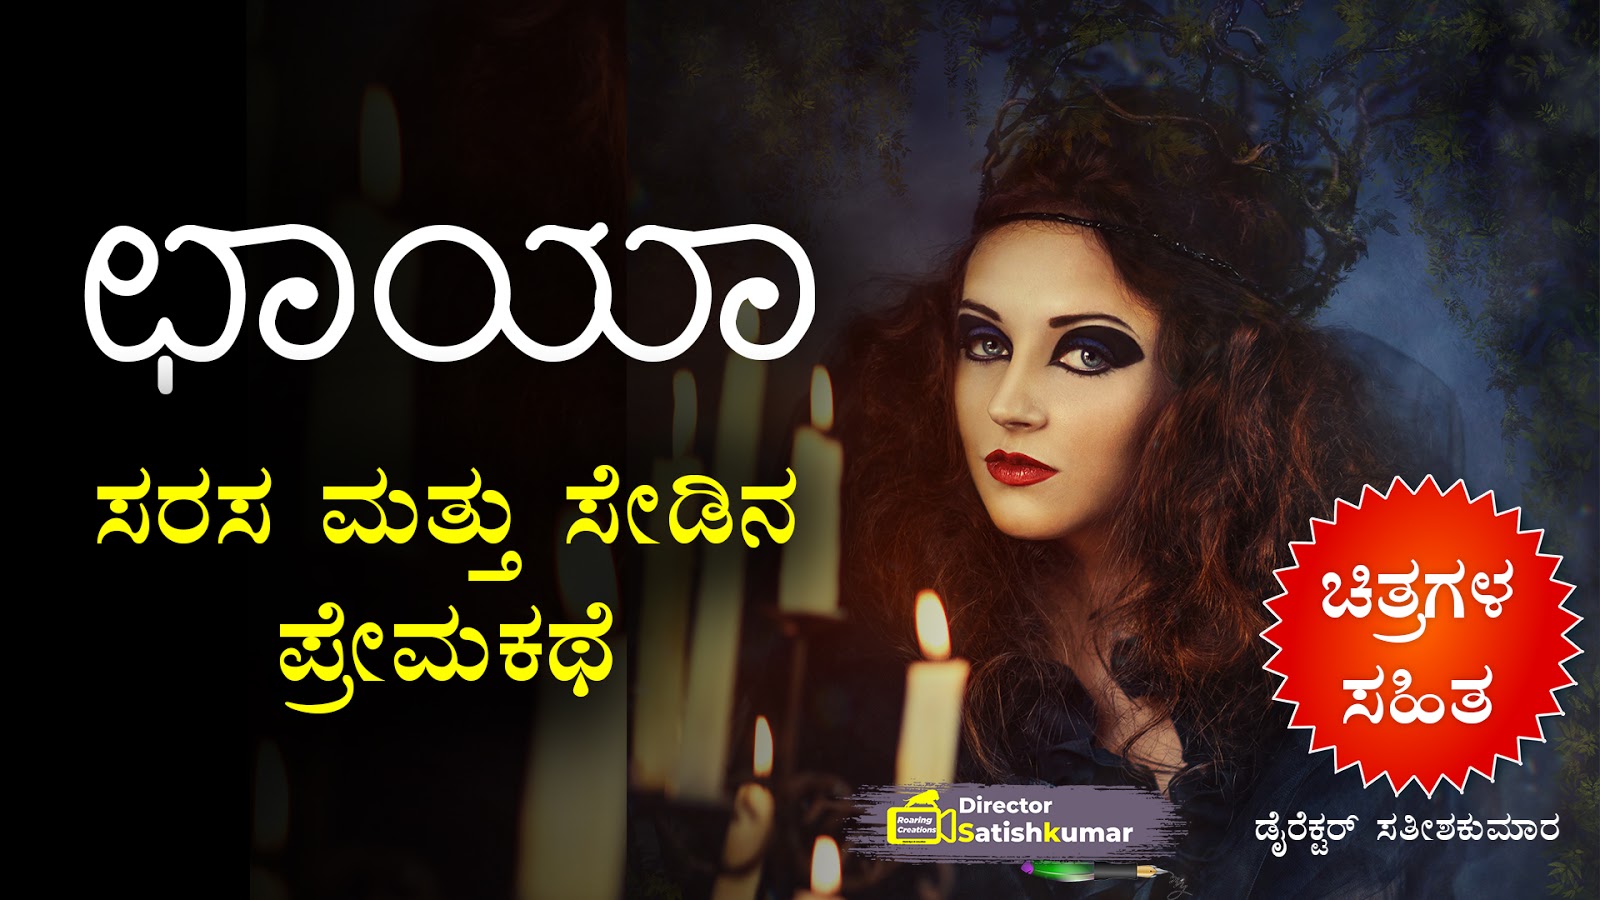 ಛಾಯಾ ; ಸರಸ ಮತ್ತು ಸೇಡಿನ ಪ್ರೇಮಕಥೆ - Romance and Revenge Love Story in Kannada